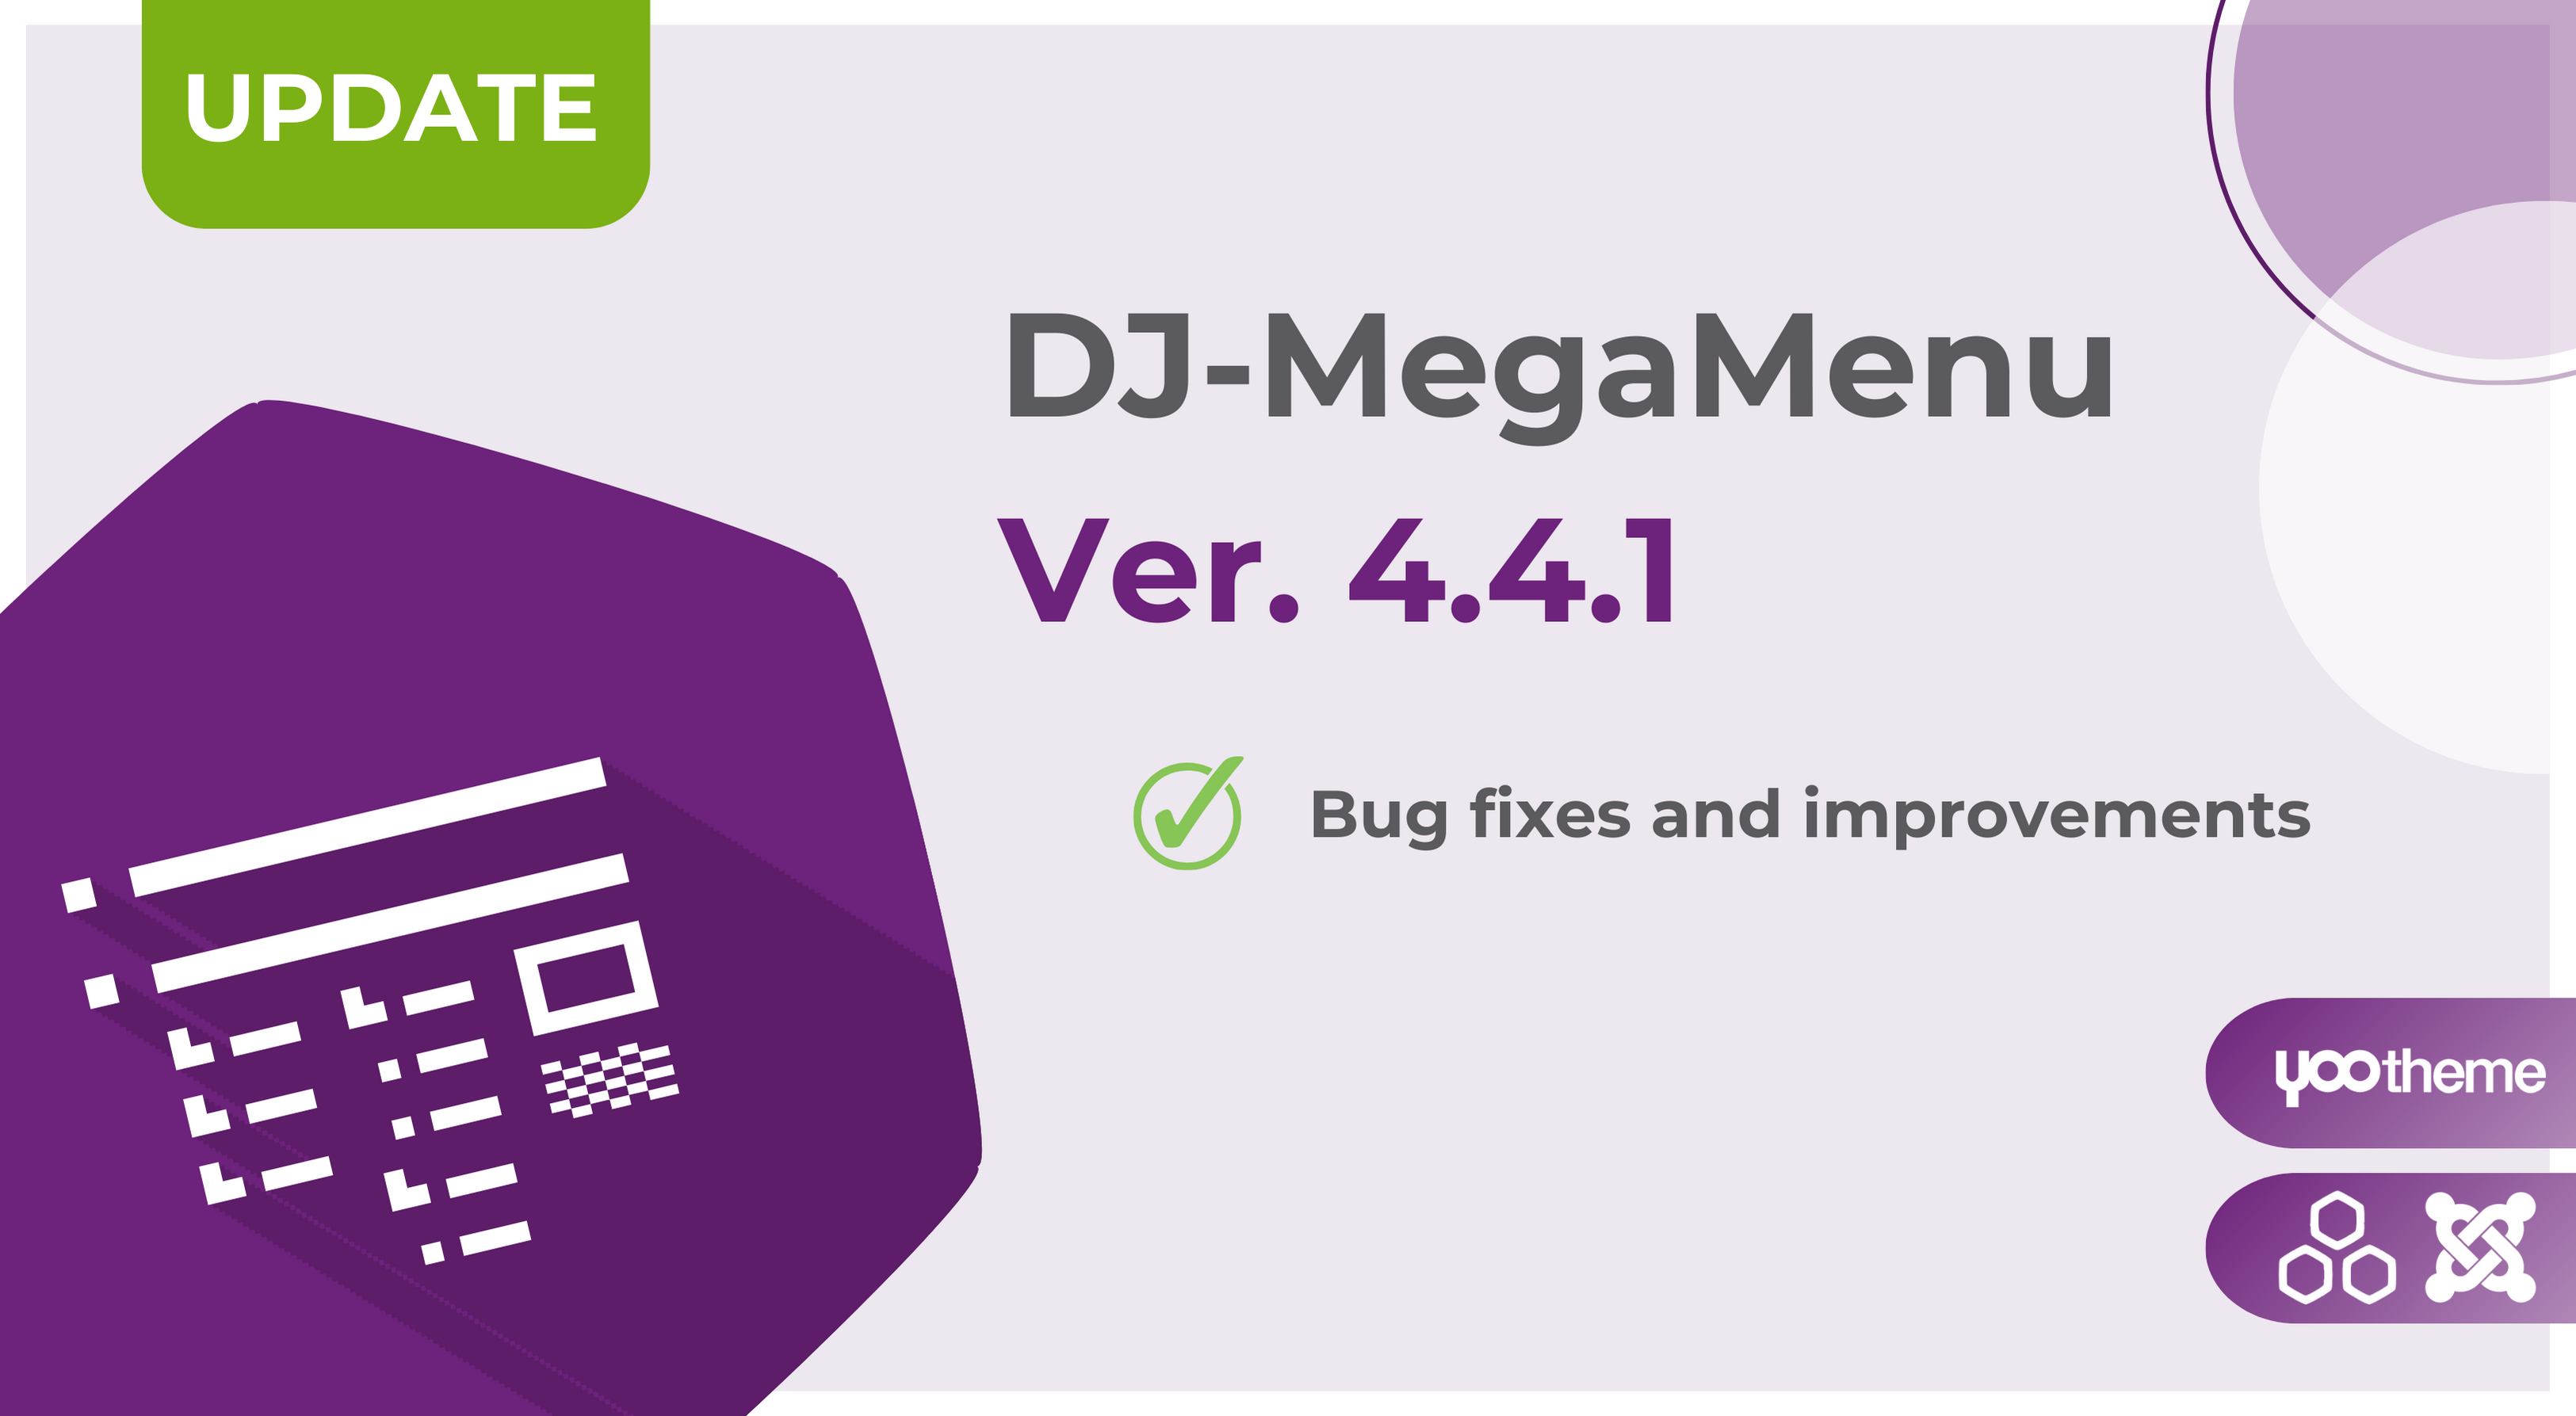 DJ-MegaMenu version 4.4.1